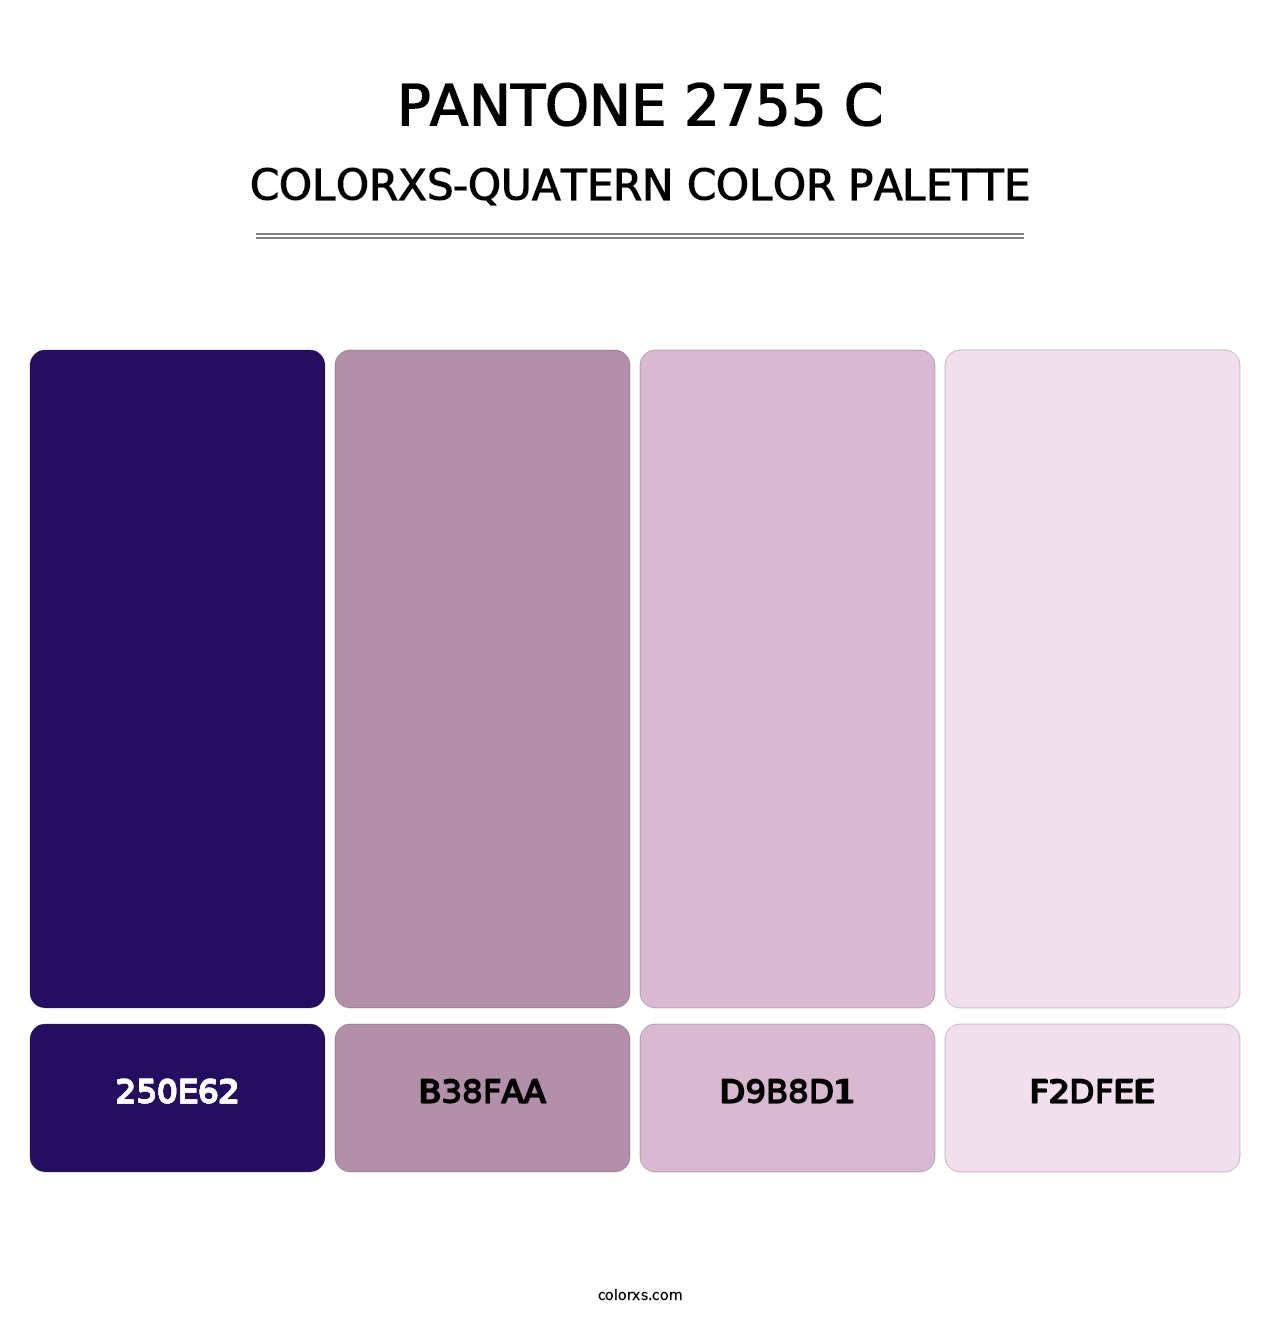 PANTONE 2755 C - Colorxs Quatern Palette